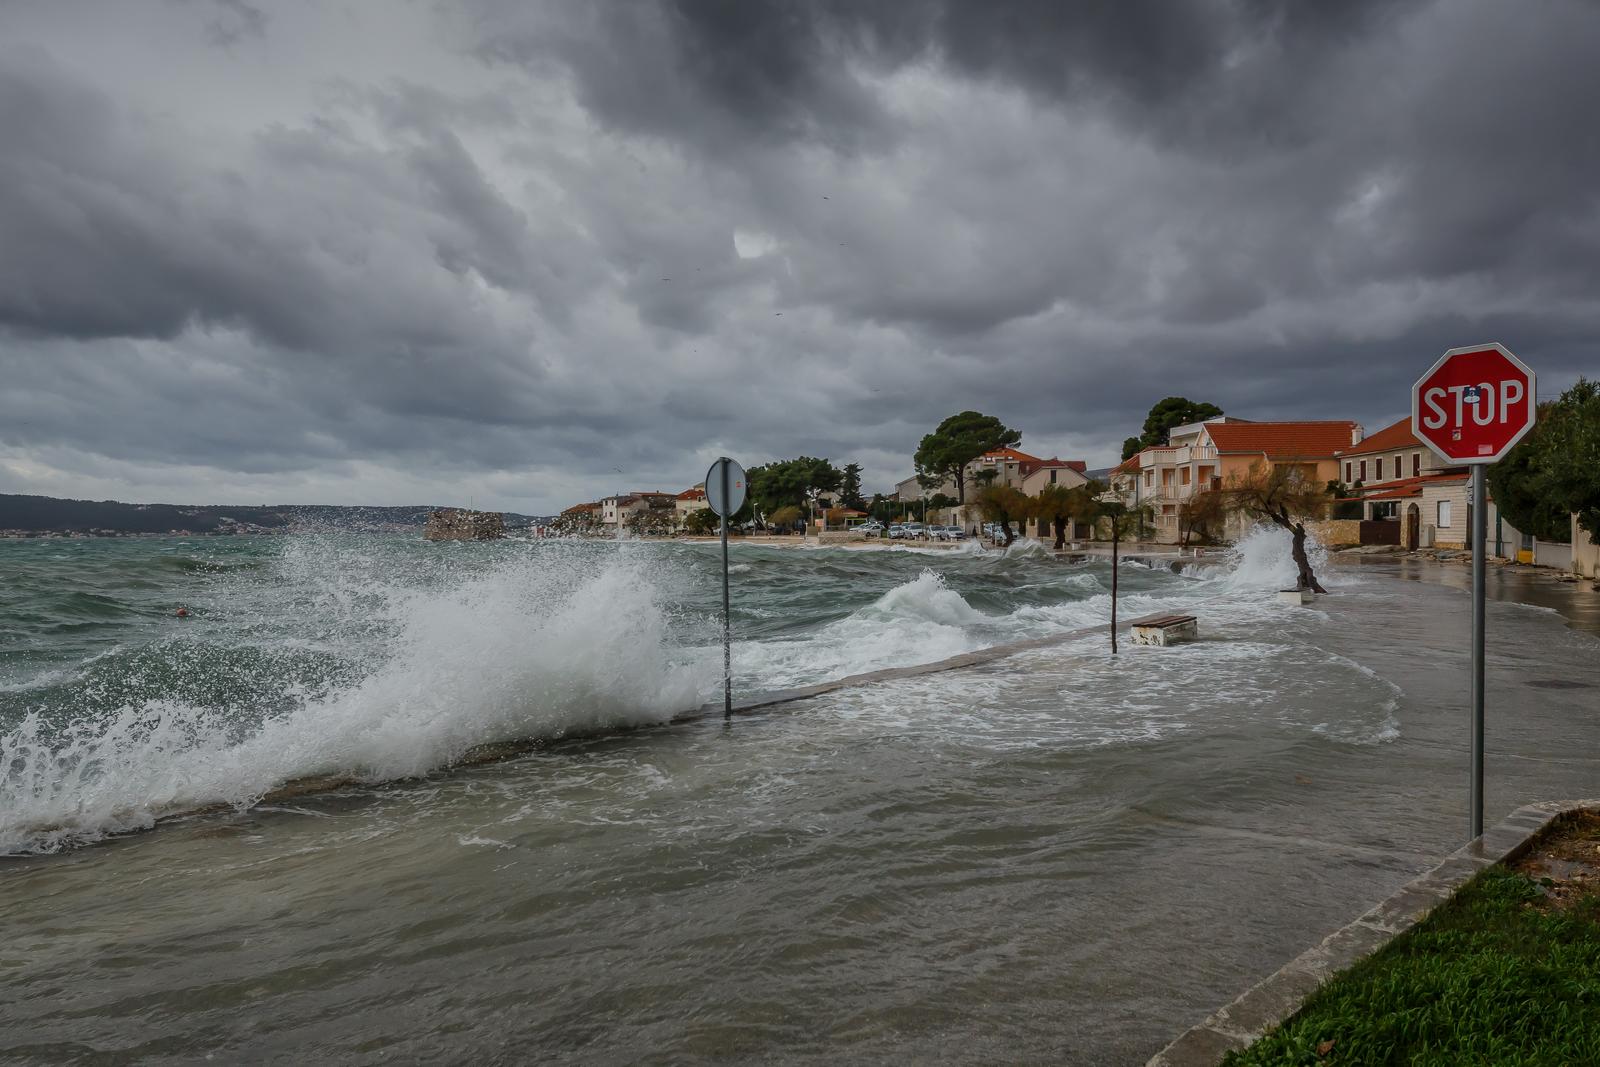 28.11.2021., Kastel Stafilici - Tijekom noci, Dalmaciju je zahvatilo olujno jugo i lebicada te su vecine dalmatinskih riva potopljene.
Photo: Zvonimir Barisin/PIXSELL